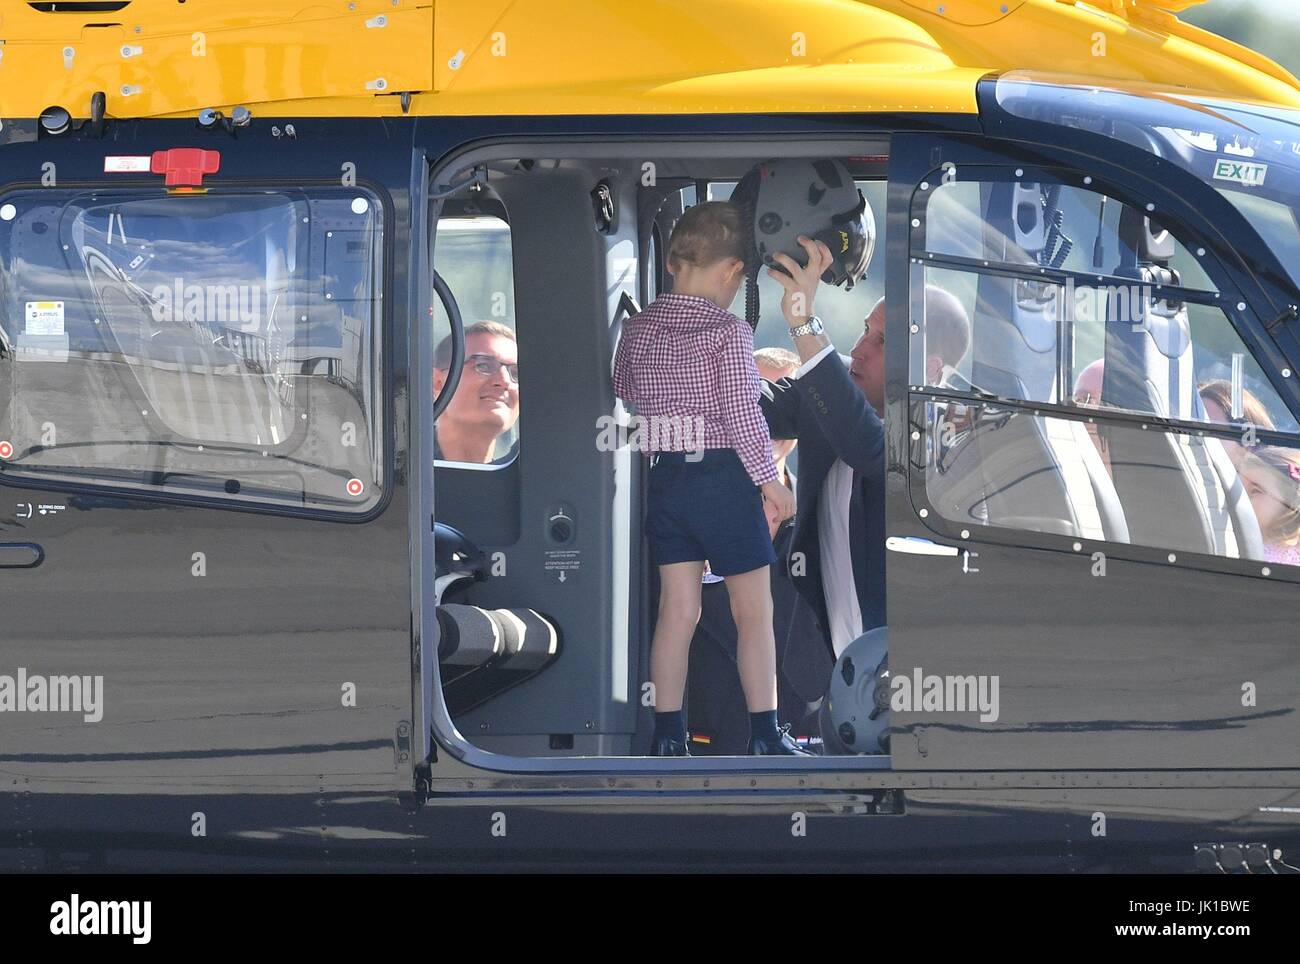 Prince George est dans un hélicoptère de sauvetage comme son père le duc de Cambridge met un casque sur sa tête, au cours d'une visite d'Airbus à Hambourg, en Allemagne avec la duchesse de Cambridge et sa sœur La Princesse Charlotte. Banque D'Images